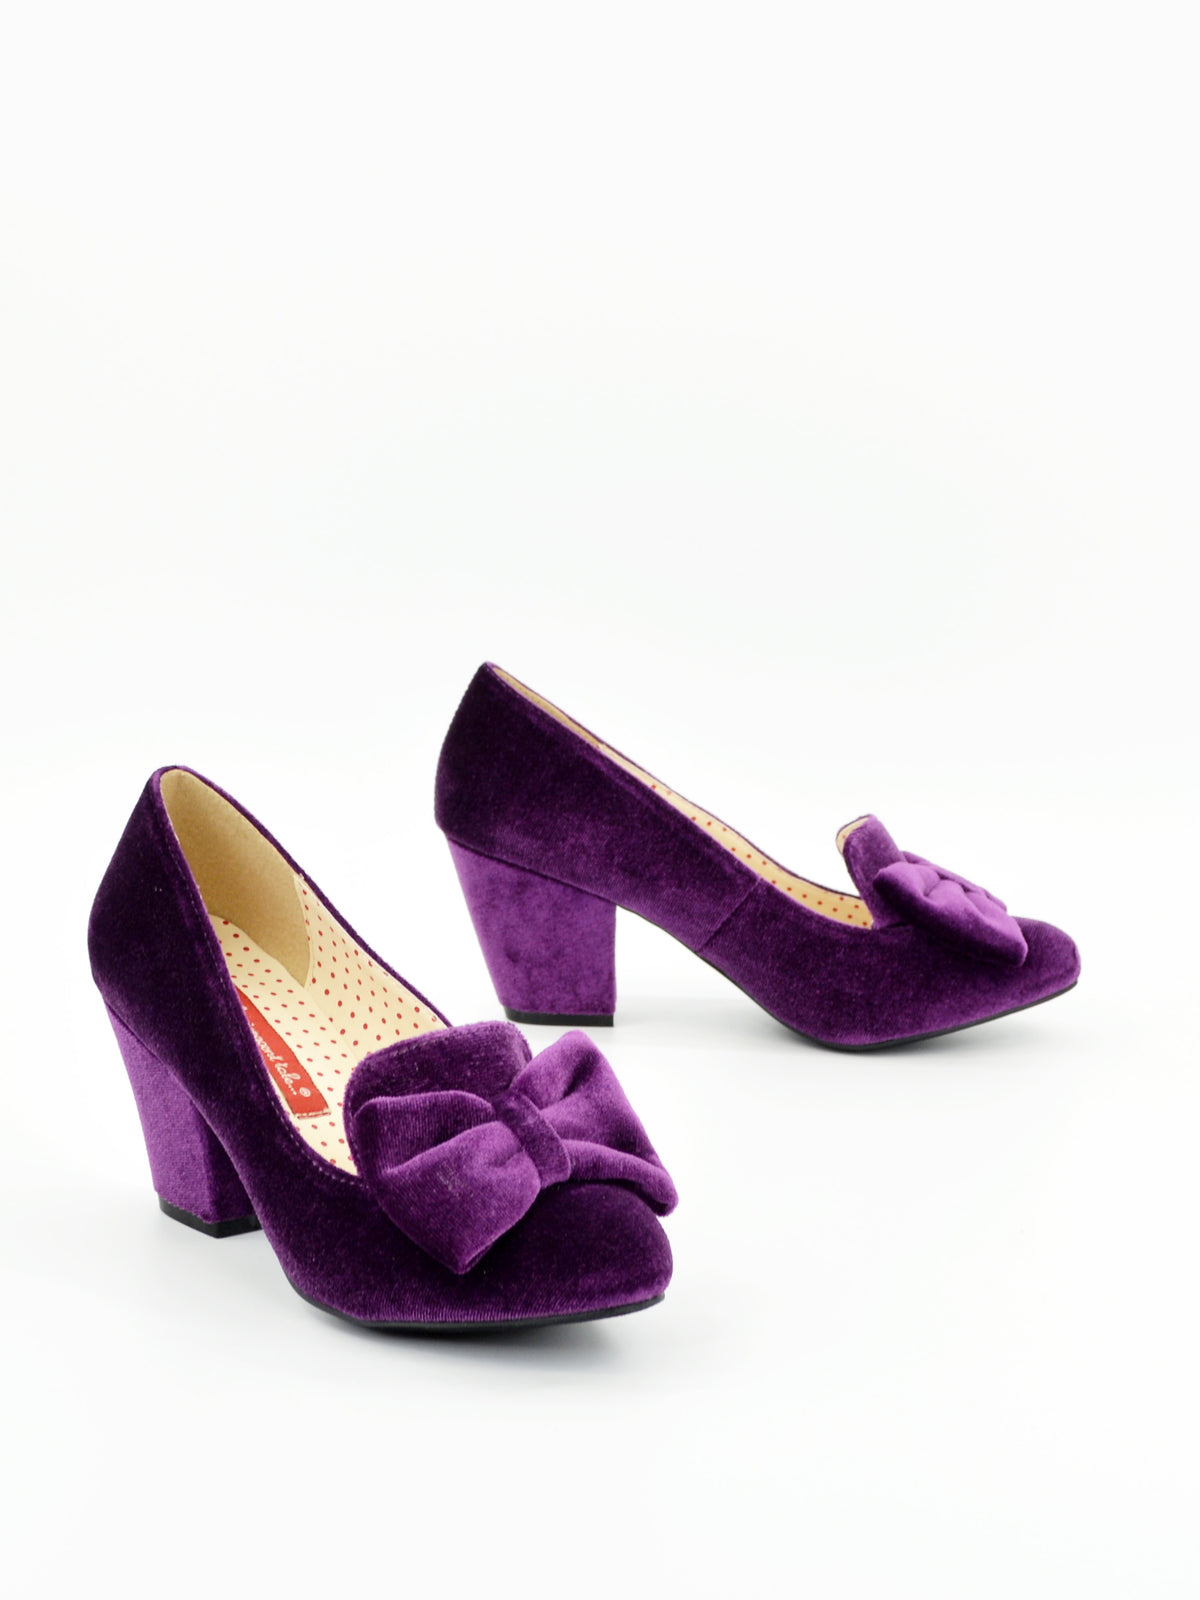 Isadora – B.A.I.T. Footwear